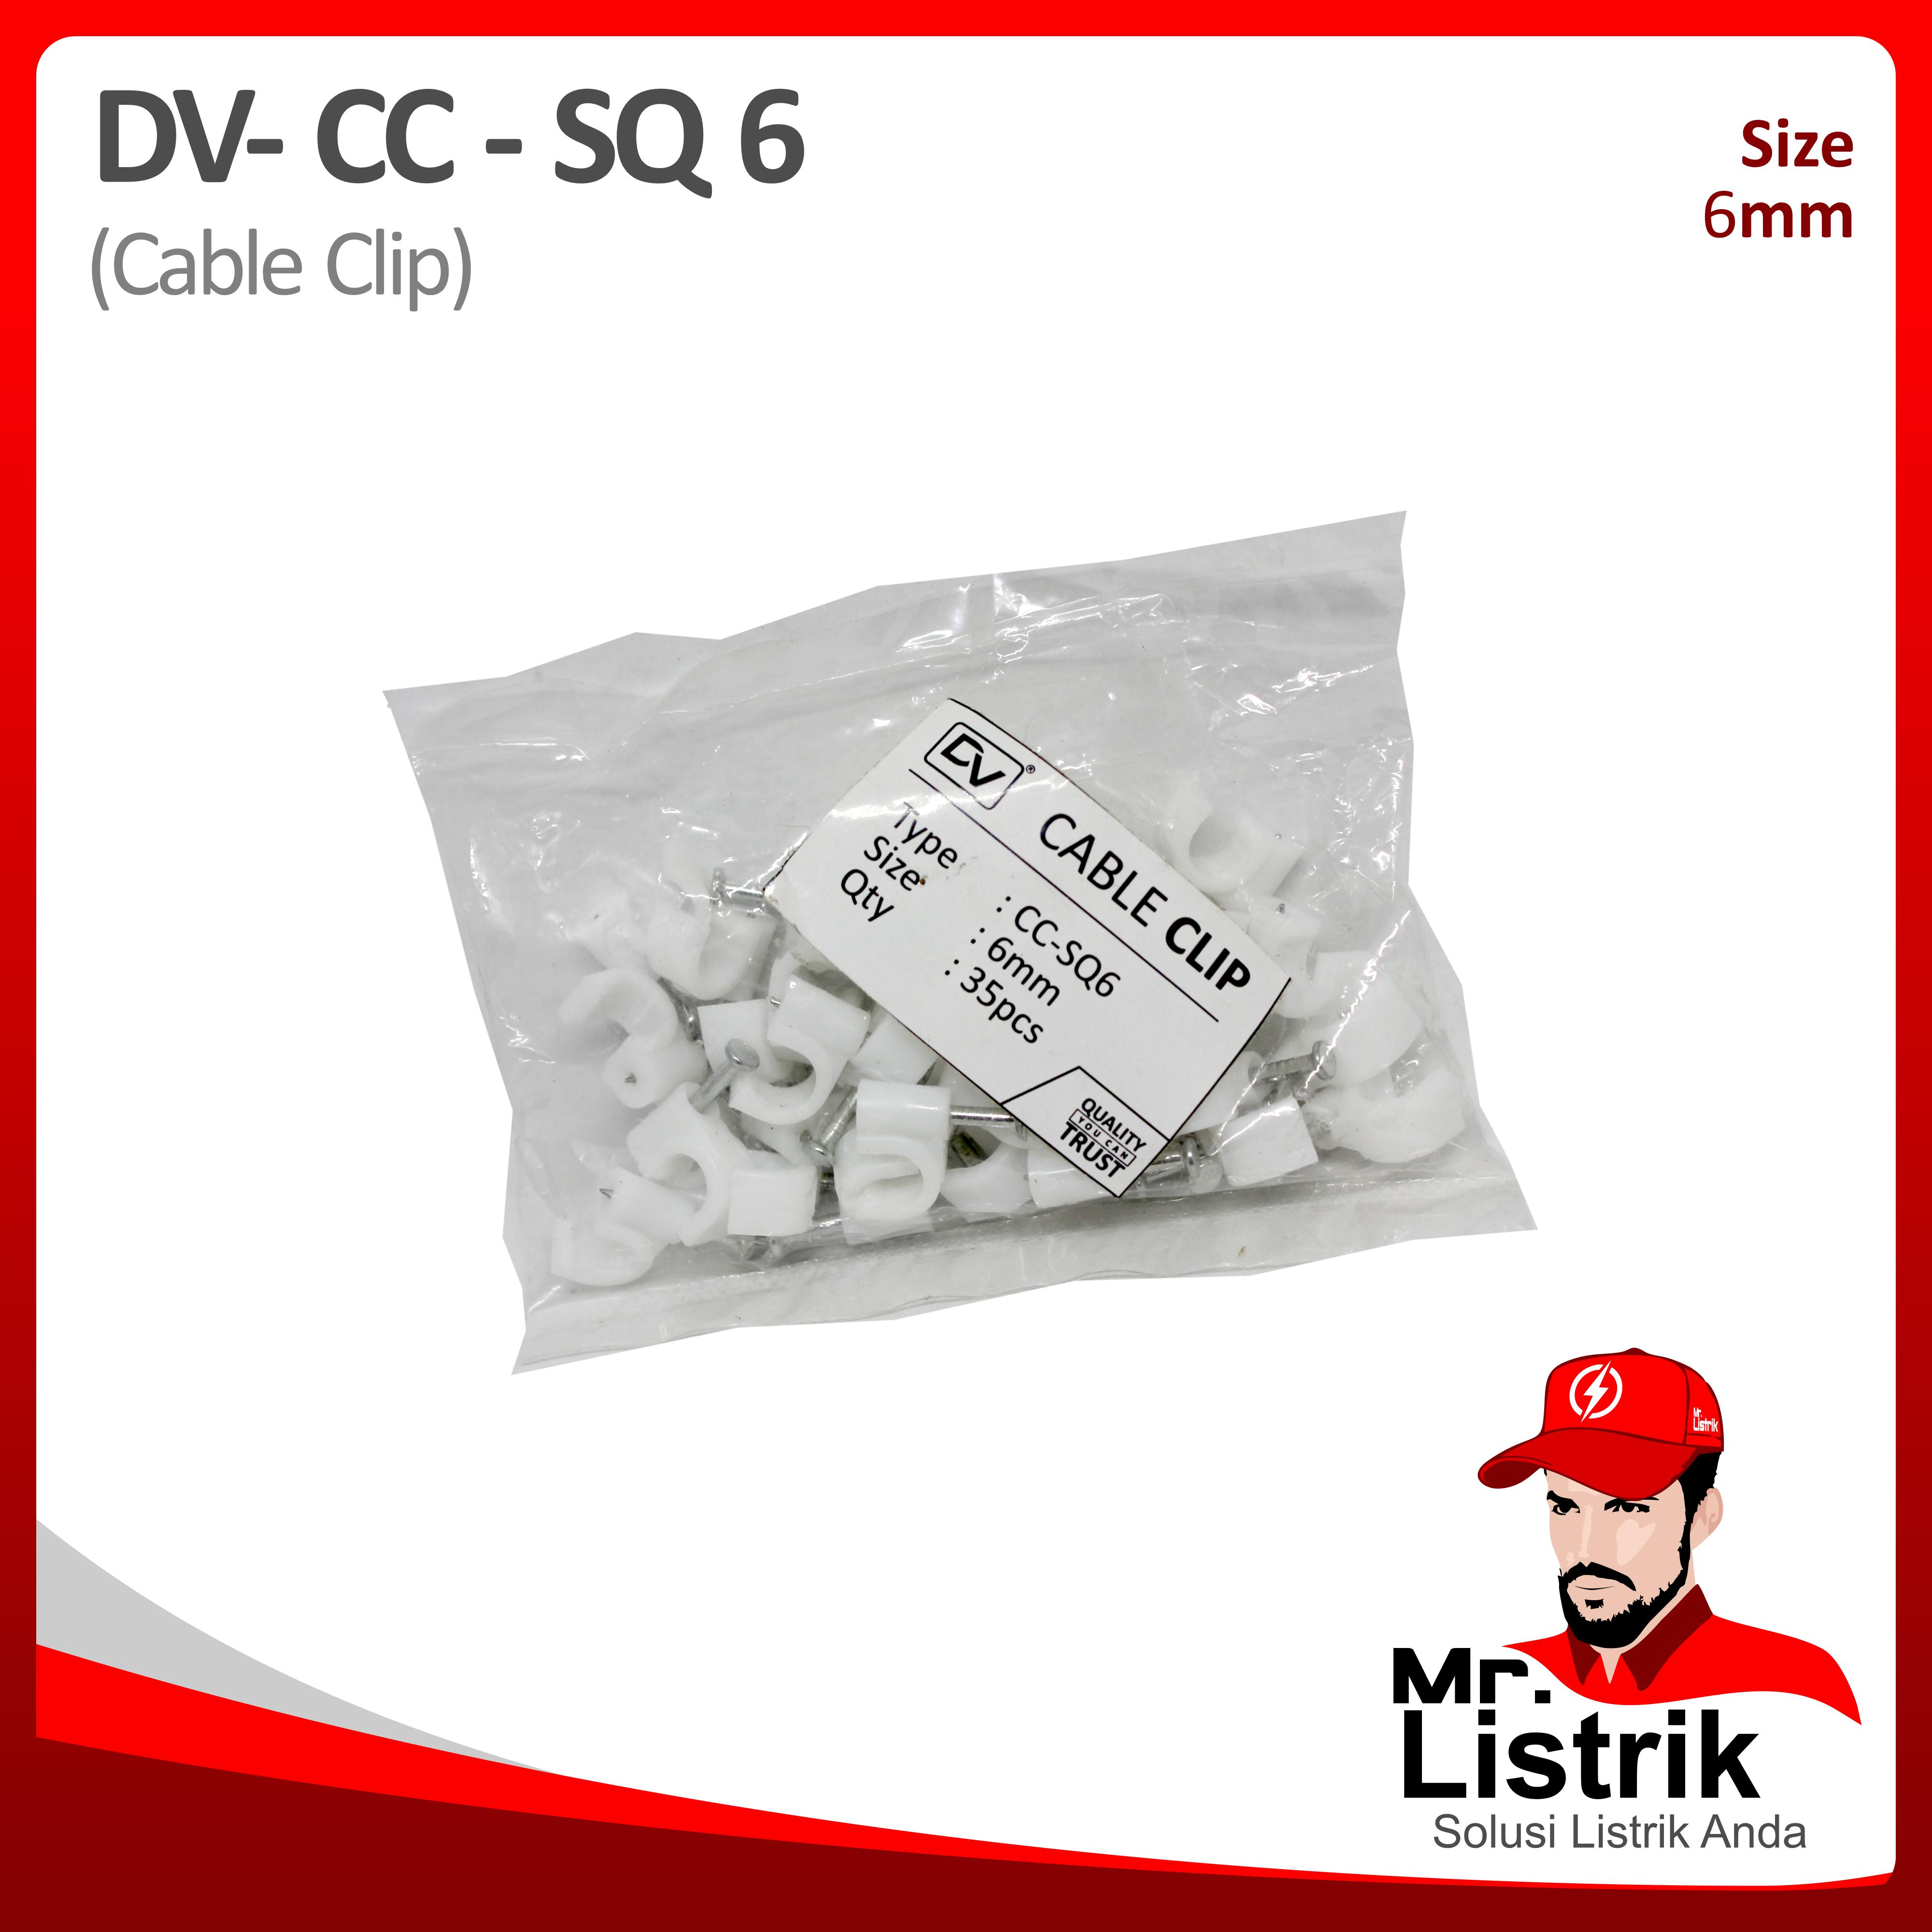 Cable Clip 6mm DV CC-SQ 6